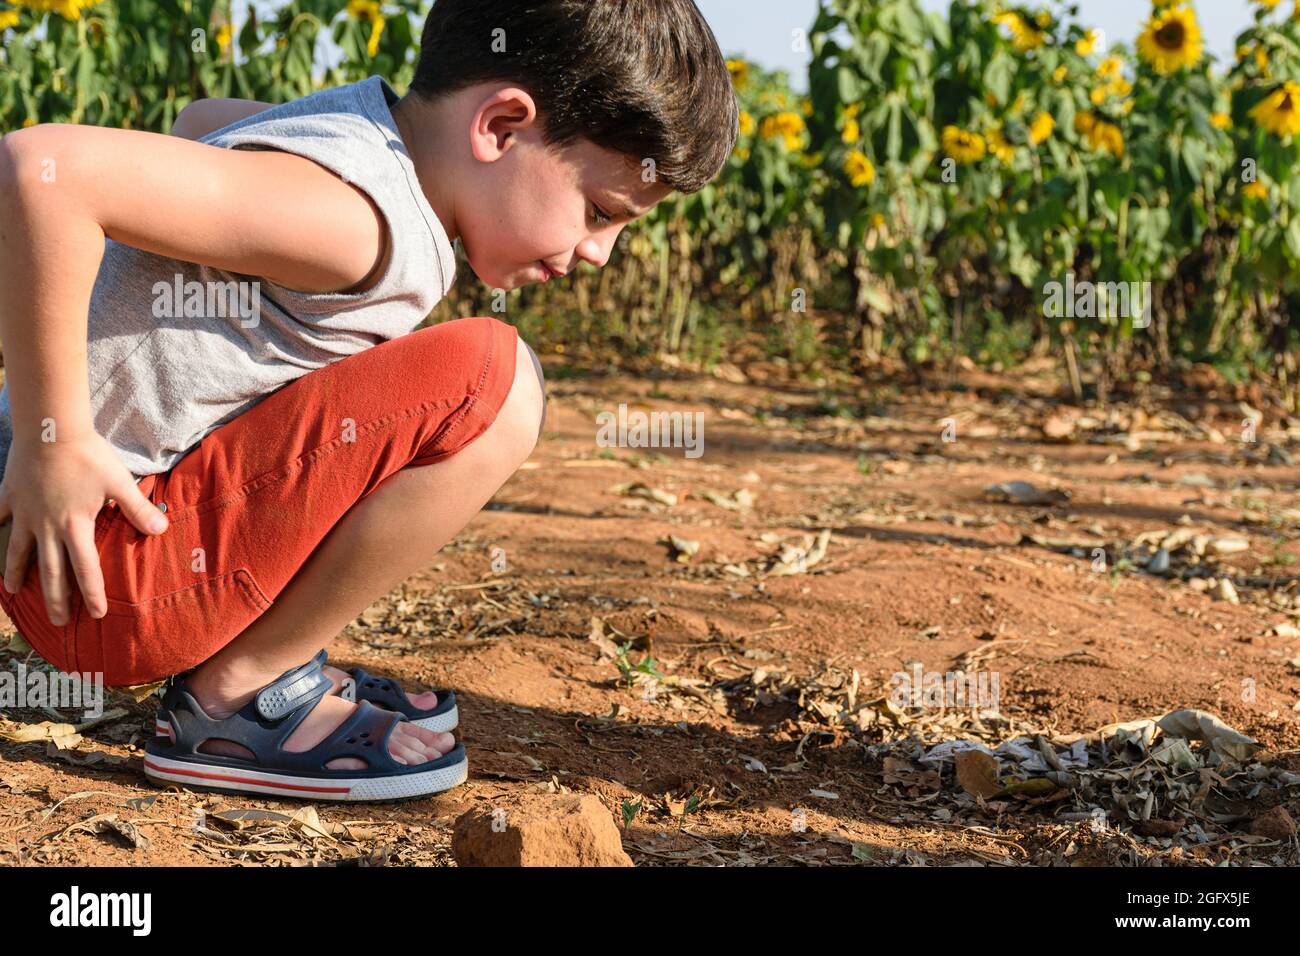 Bambino brasiliano di 8 anni che gioca nella sabbia in un crouch. Sullo sfondo una piantagione di girasole. Foto Stock